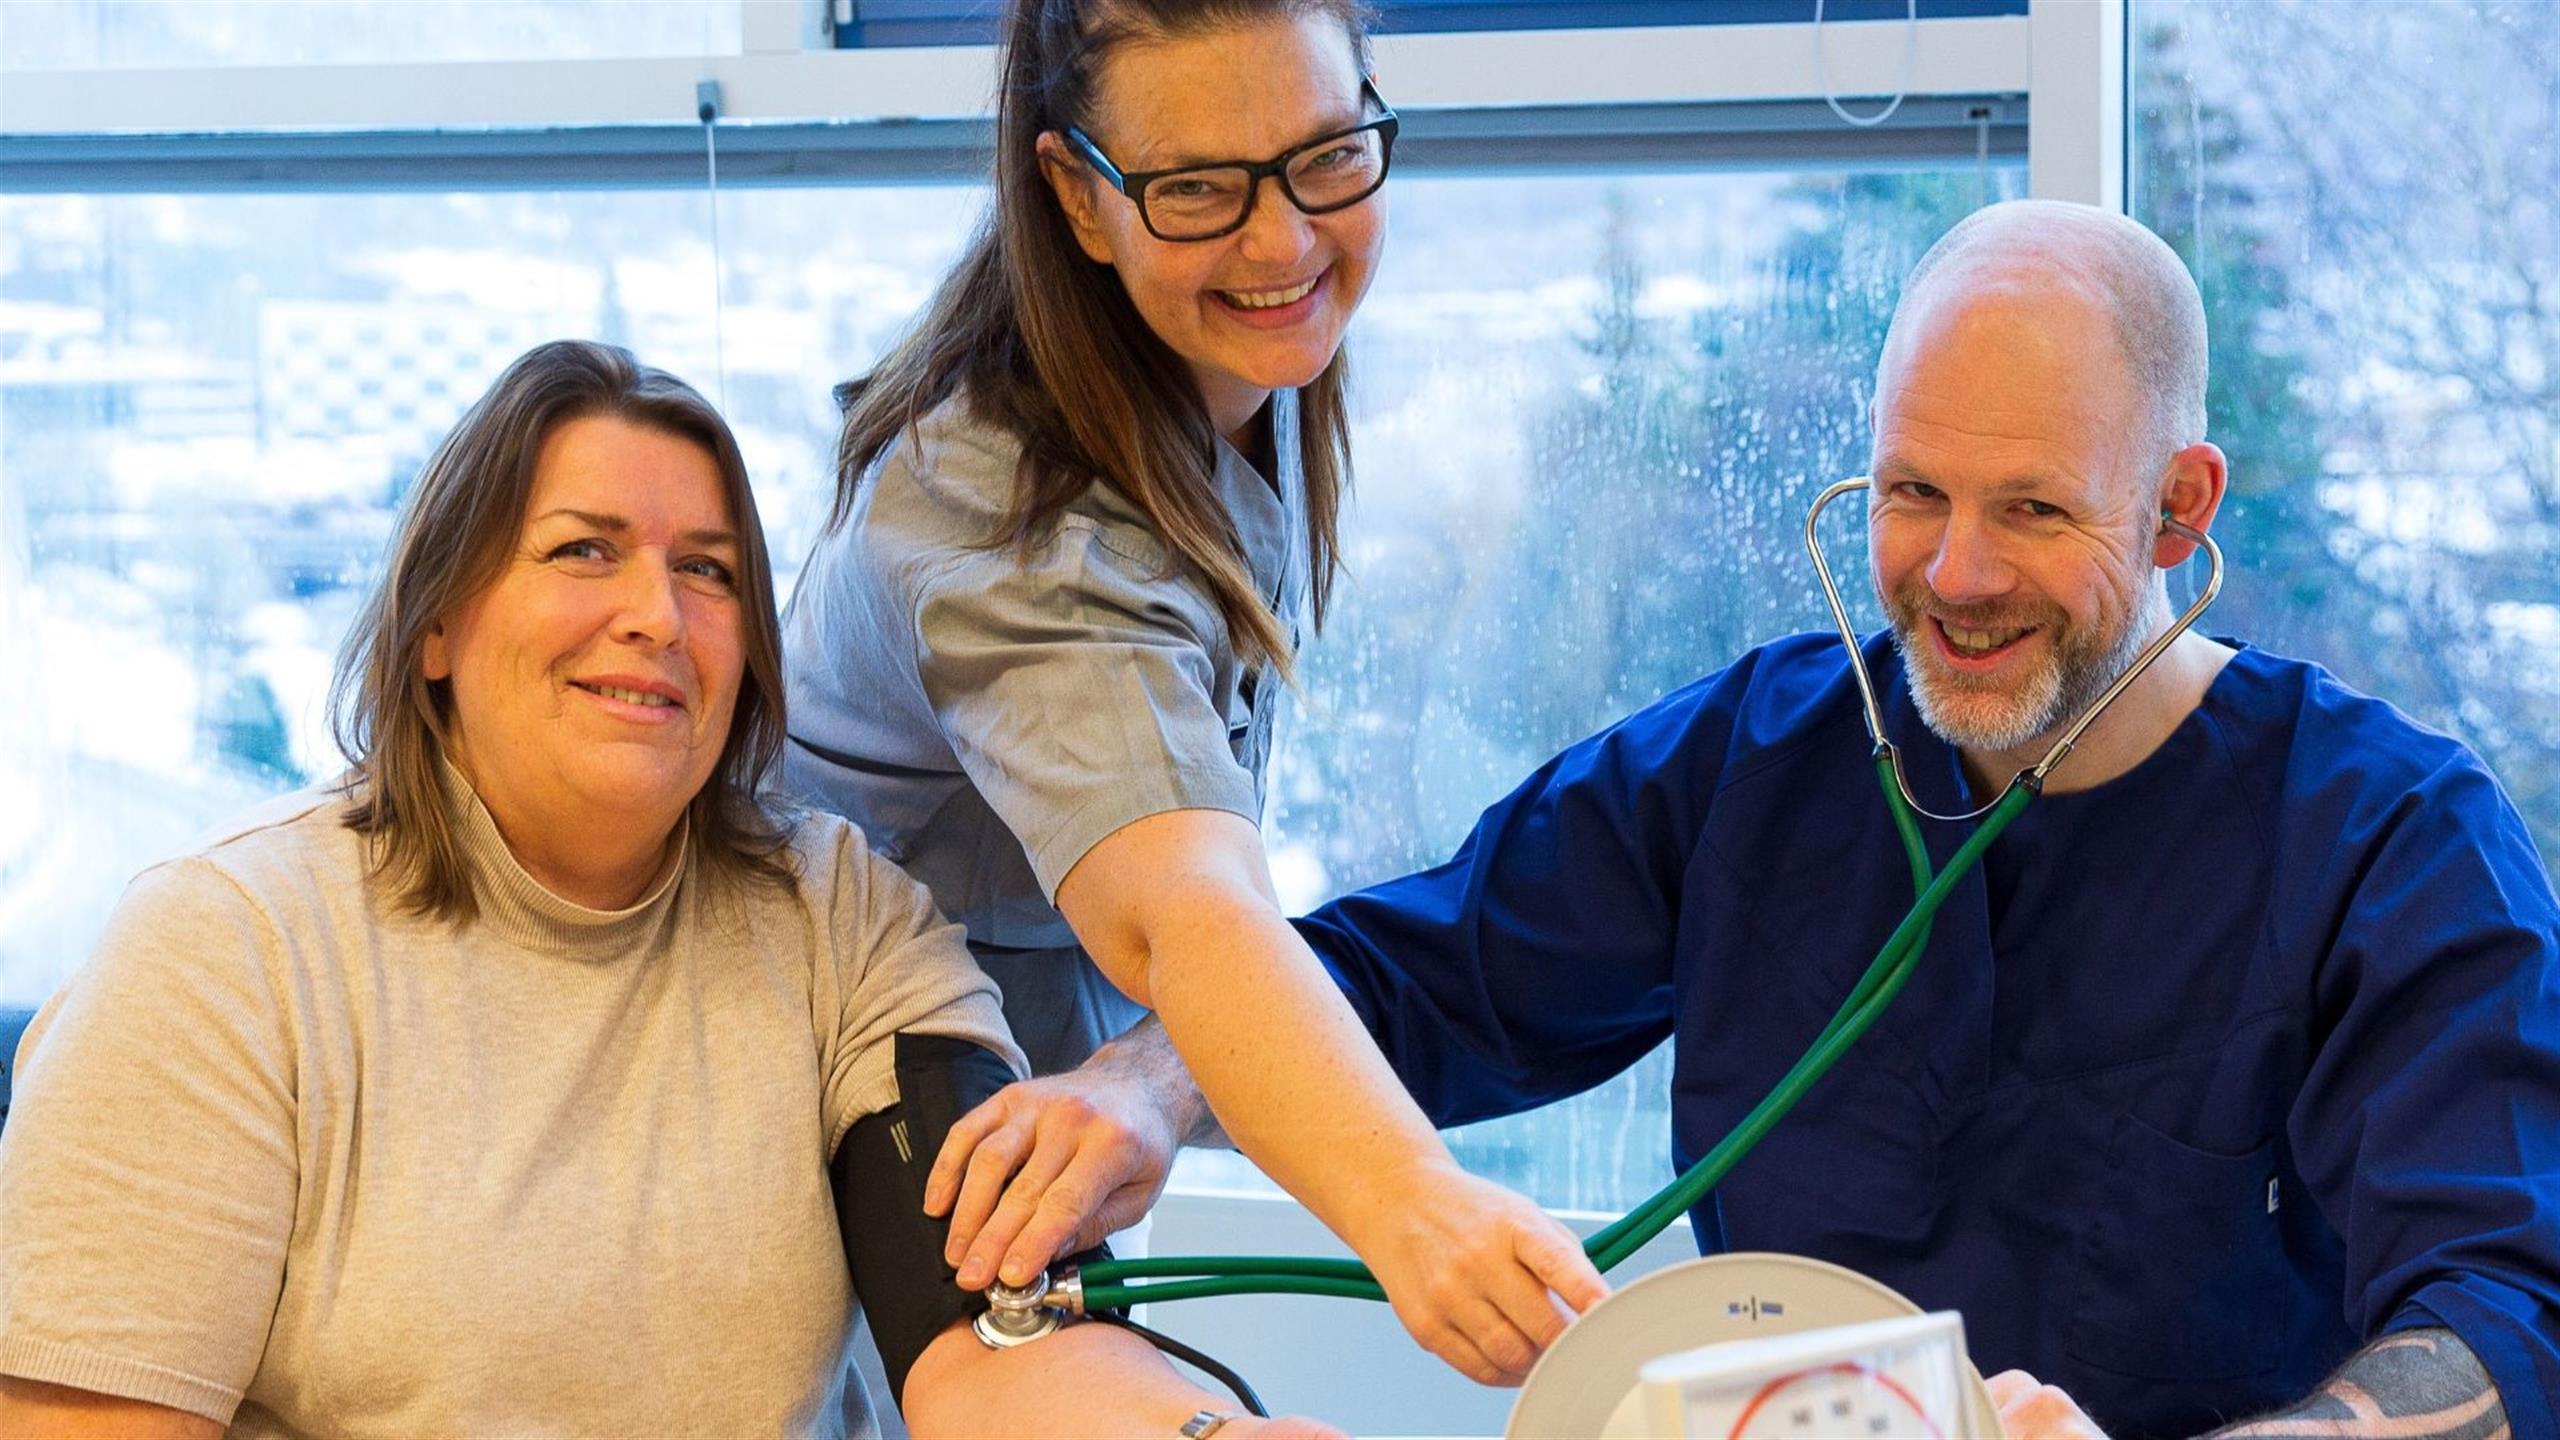 Vernepleier og vernepleierstudent måler blodtrykk på kvinne